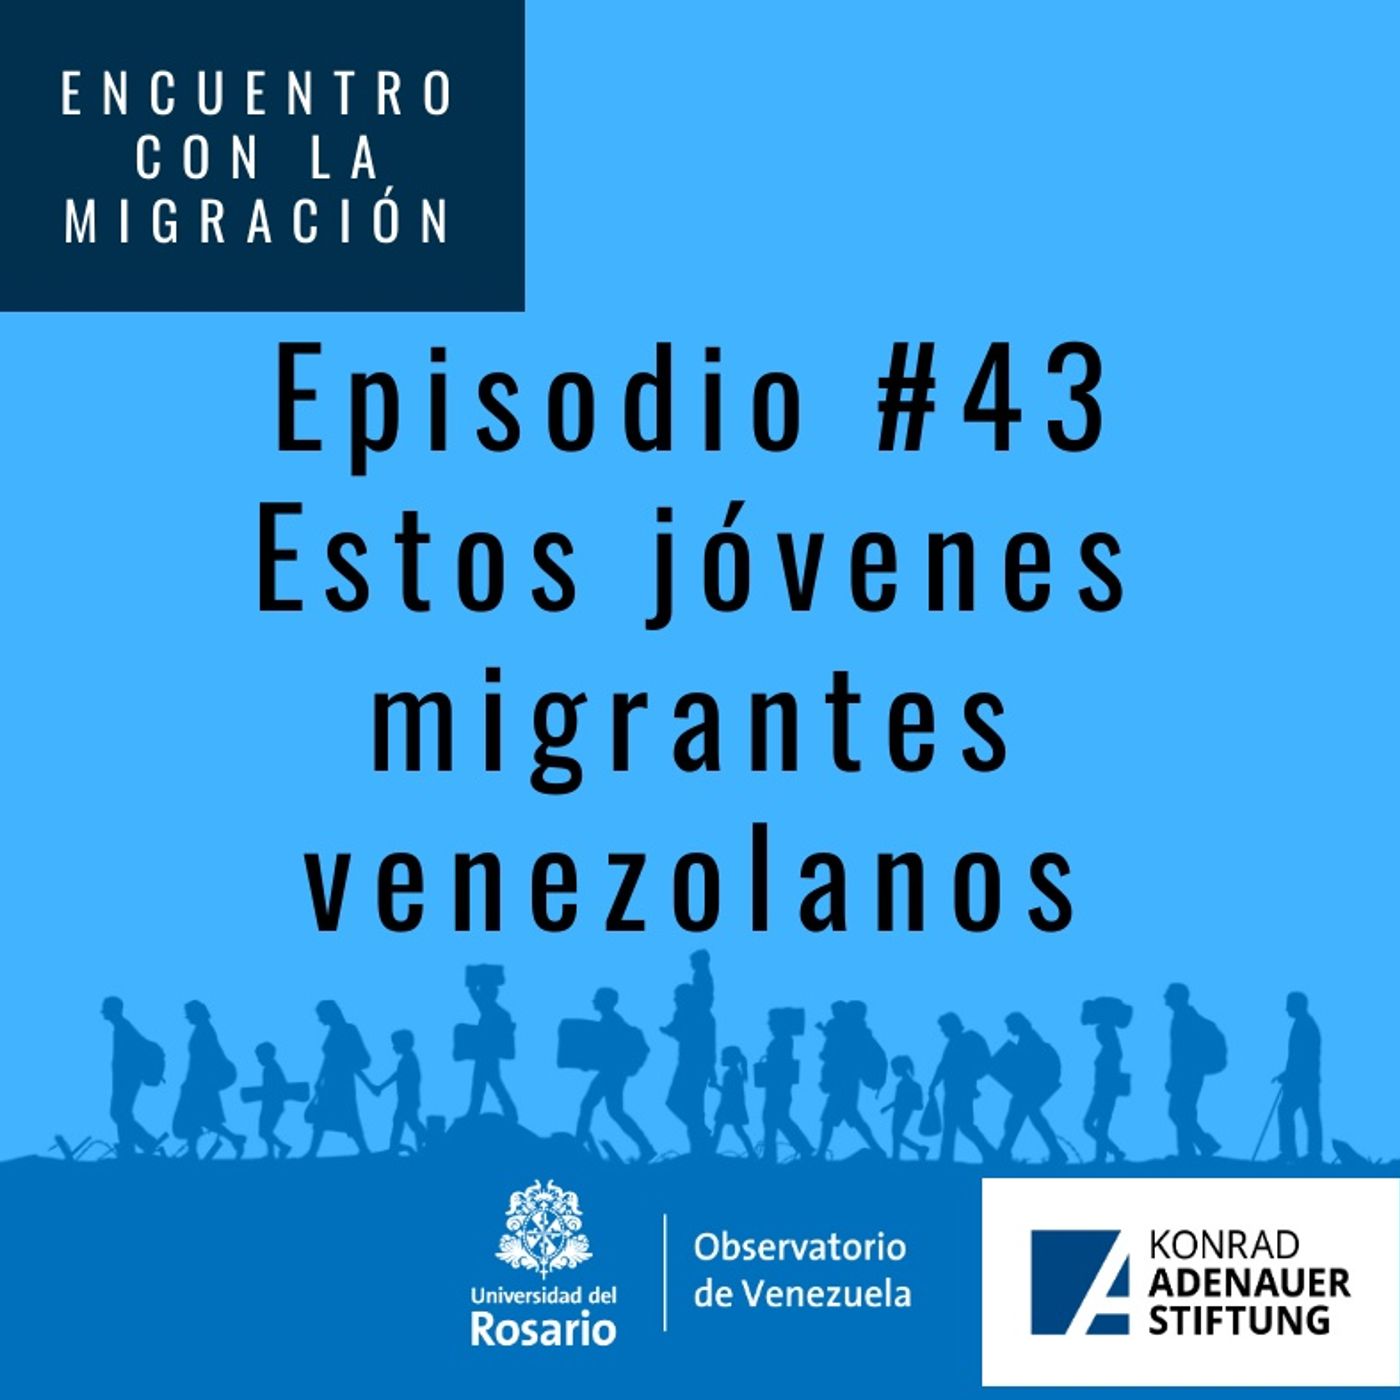 Estos jóvenes migrantes venezolanos